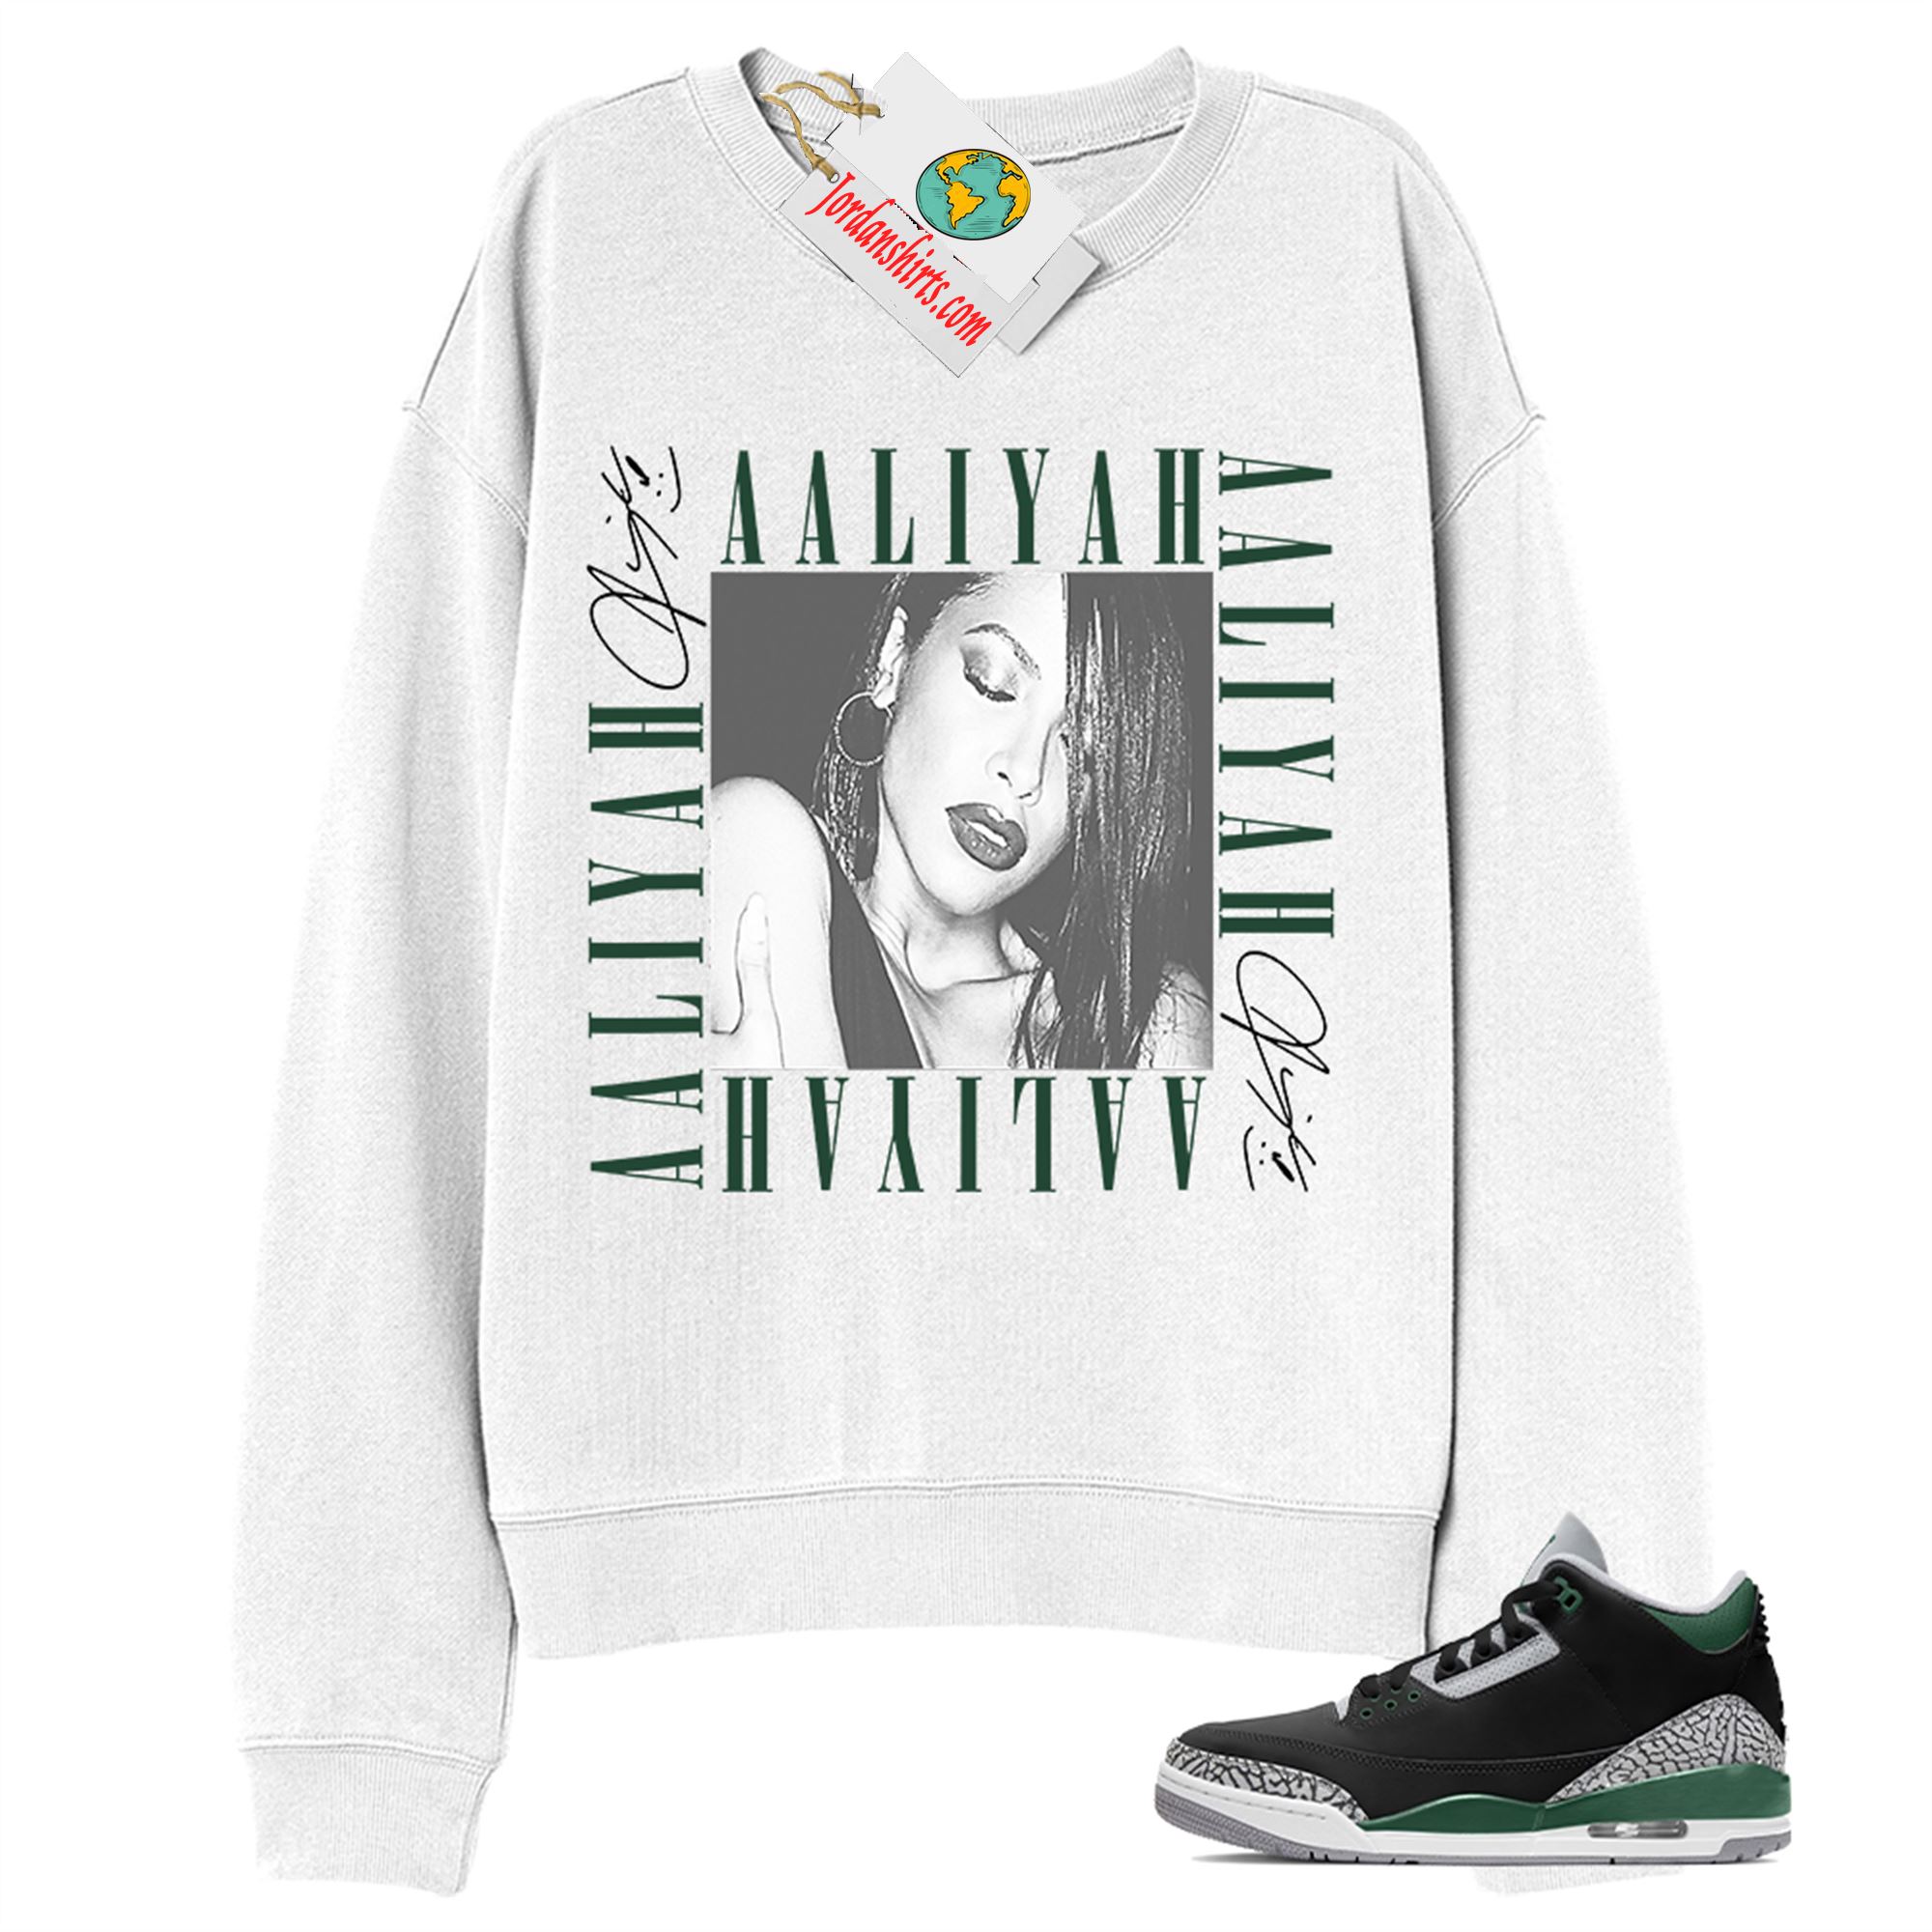 Jordan 3 Sweatshirt, Aaliyah Box White Sweatshirt Air Jordan 3 Pine Green 3s Size Up To 5xl